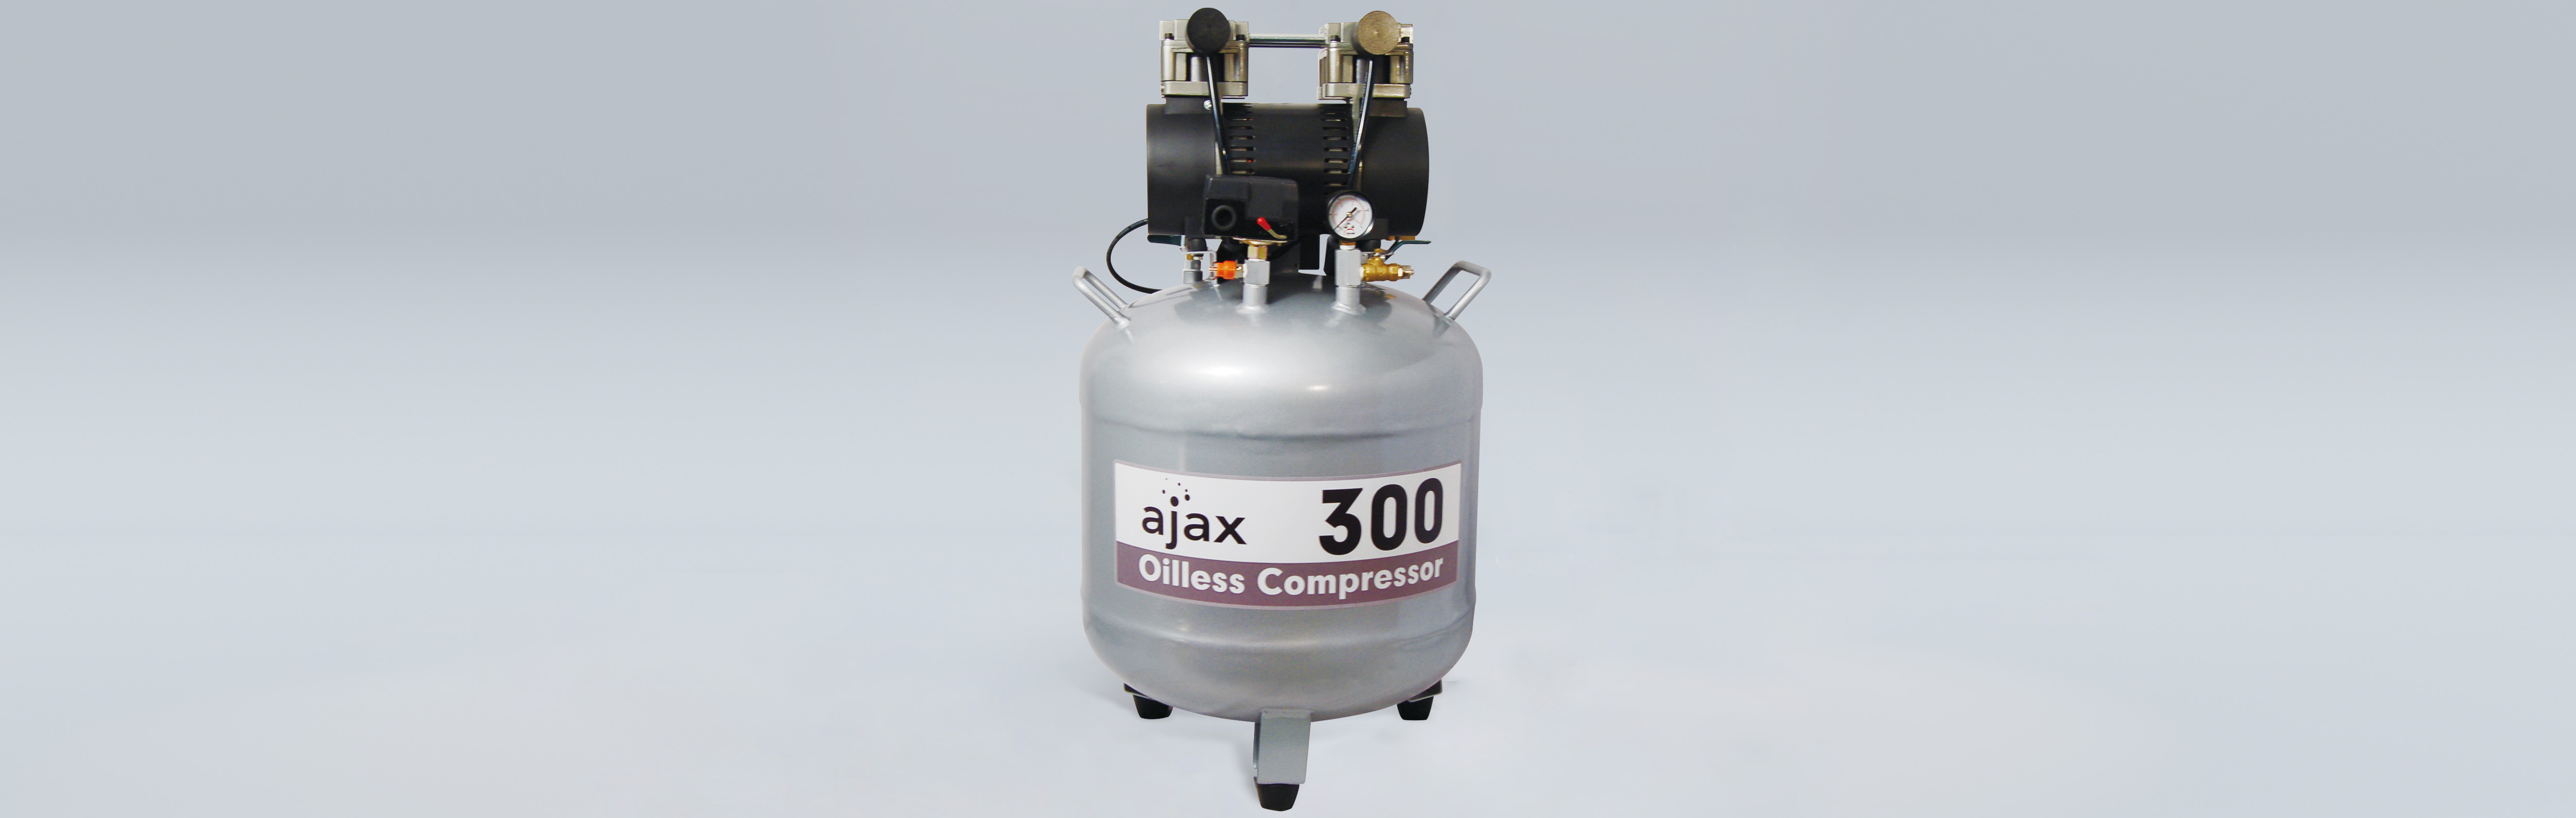 Compresor de aire Ajax 300